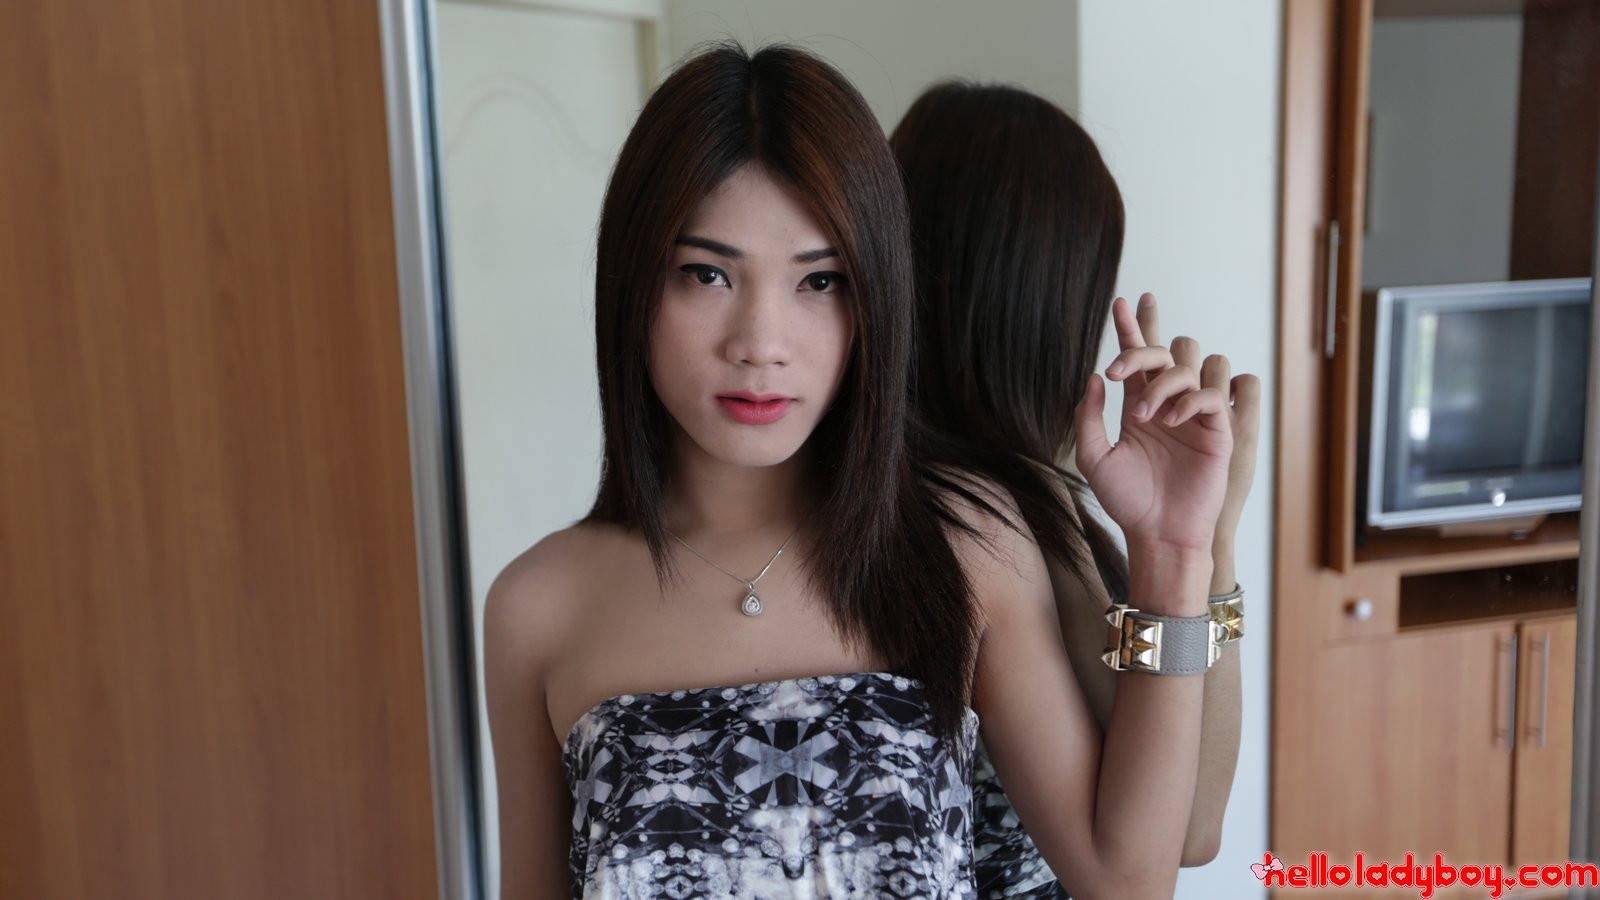 Sexy ladyboy tailandese succhia il cazzo del suo amico turista bianco
 #77877348